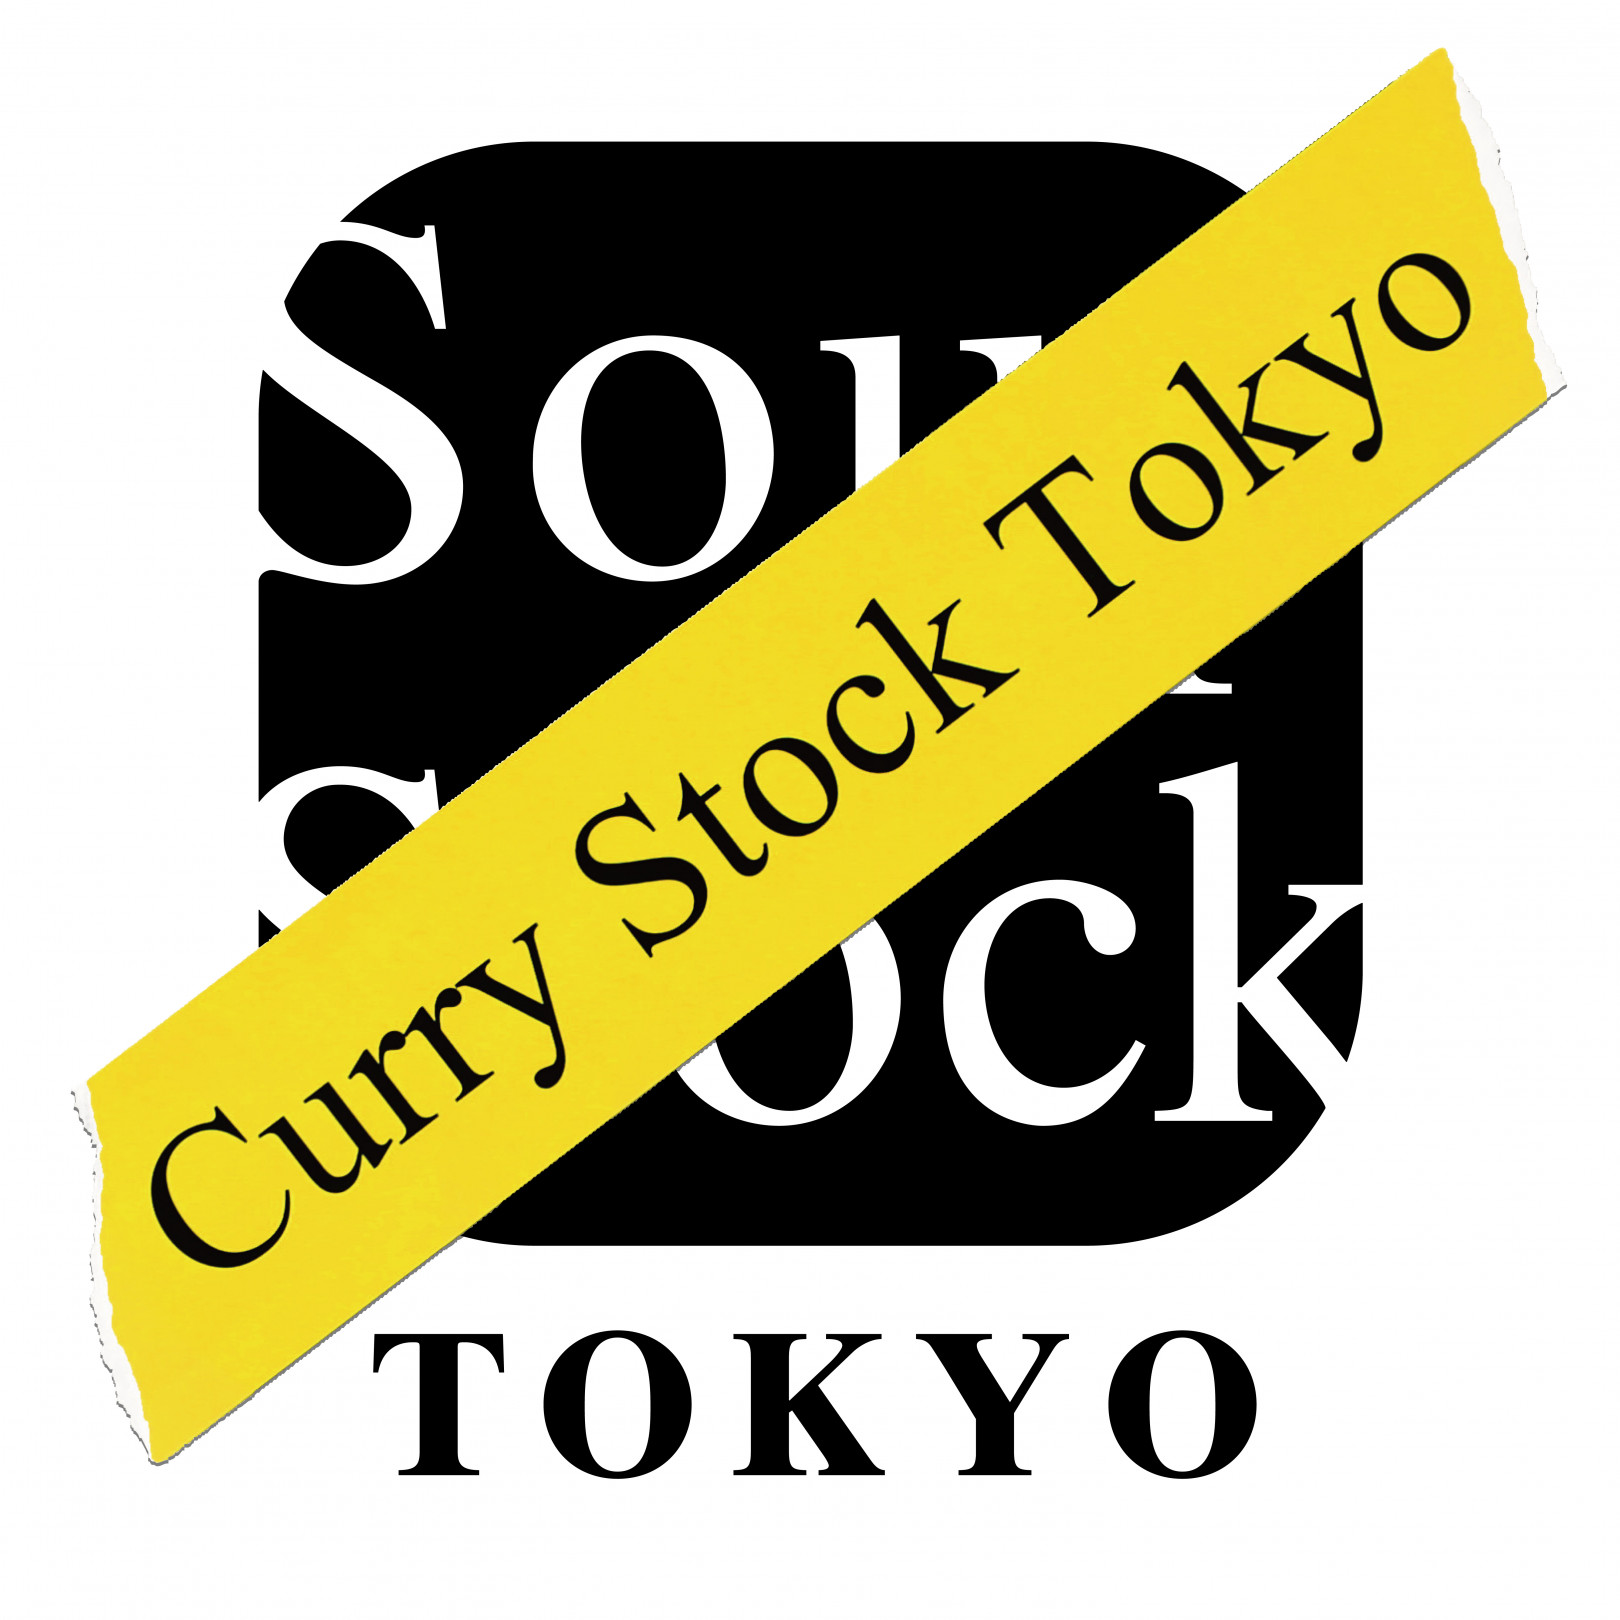 スープストックトーキョー（Soup Stock Tokyo）、「Curry Stock Tokyo」を開催